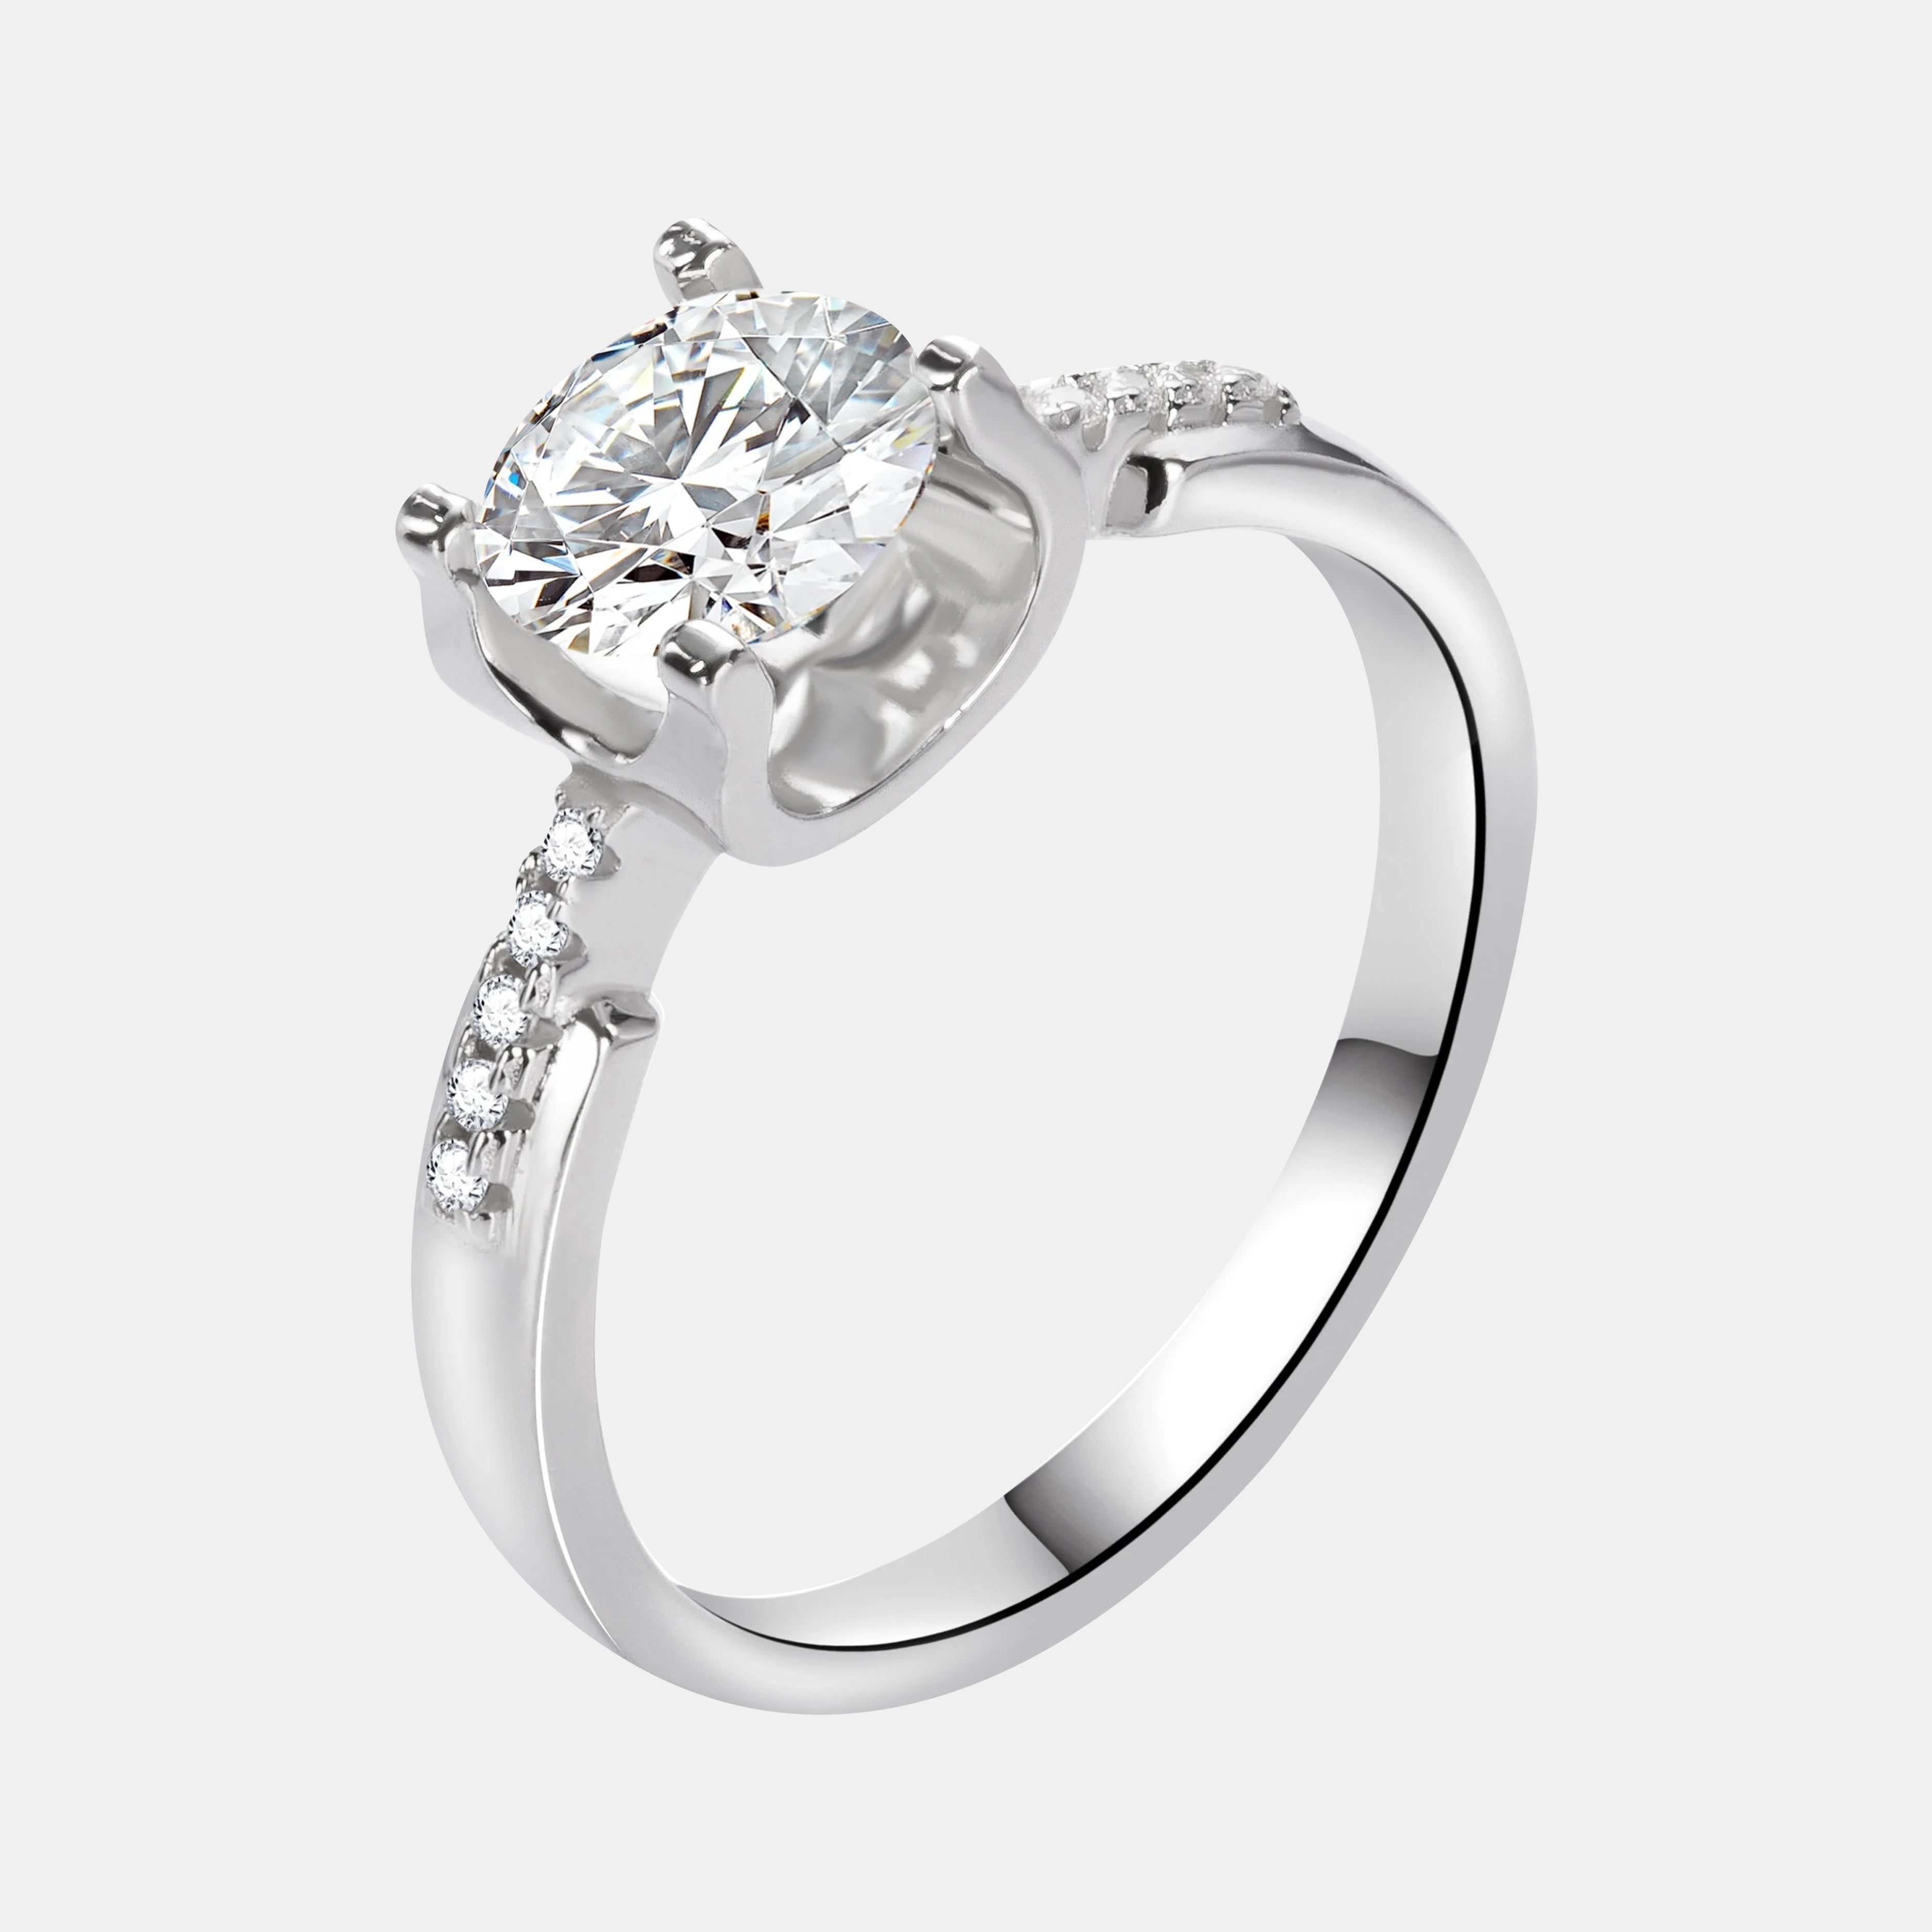 【#9】925 Sterling Silver Moissanite Ring